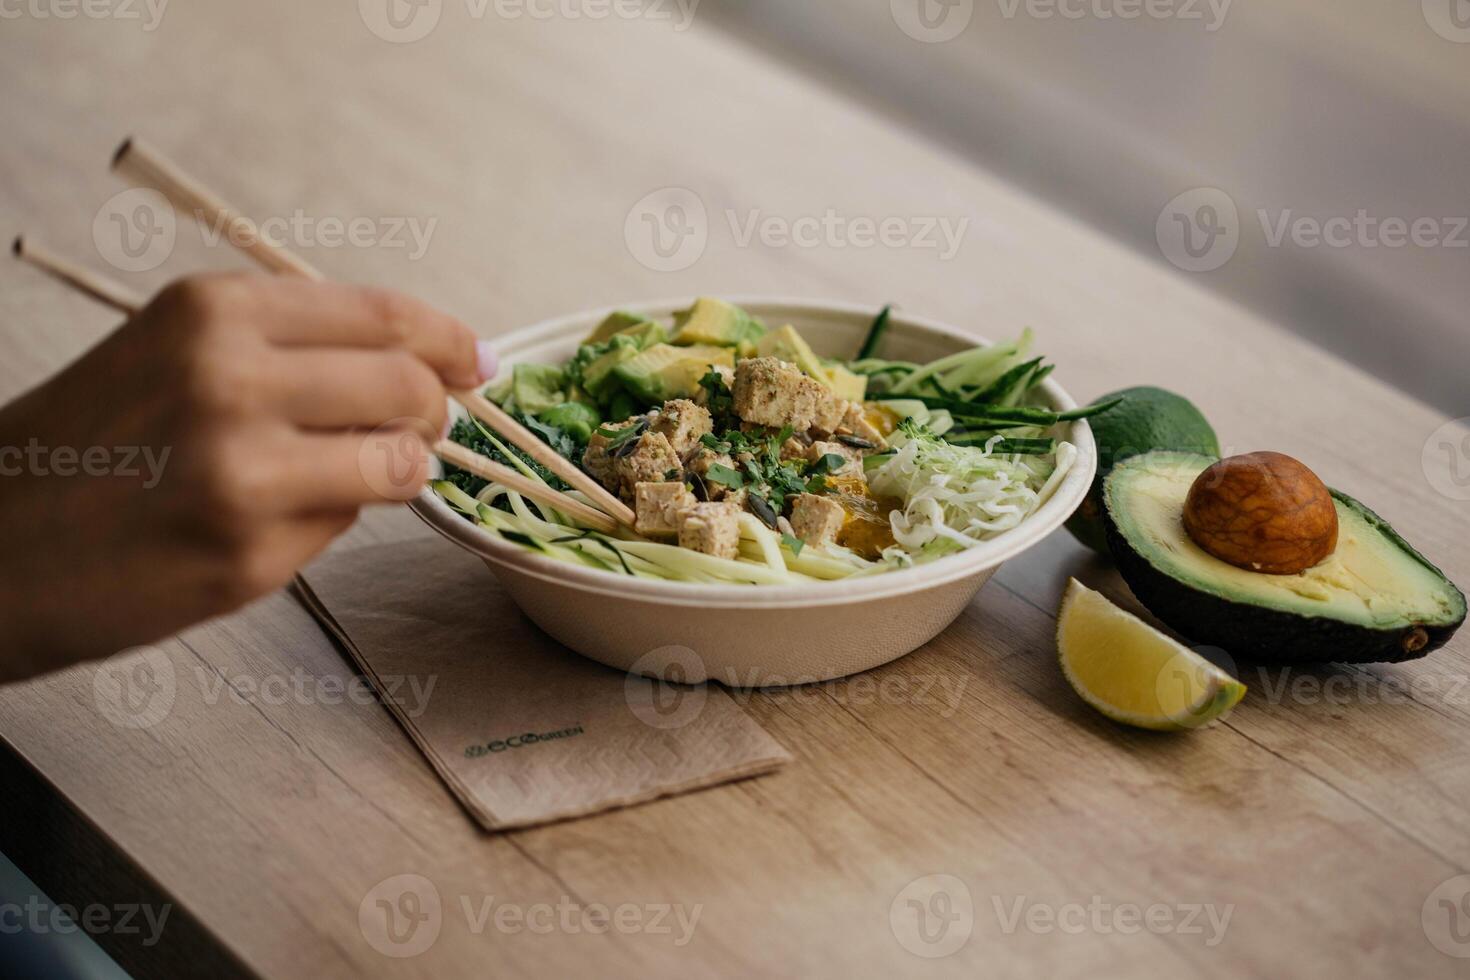 asiatico stile tagliatelle con tofu, avocado, sesamo semi e verdure foto